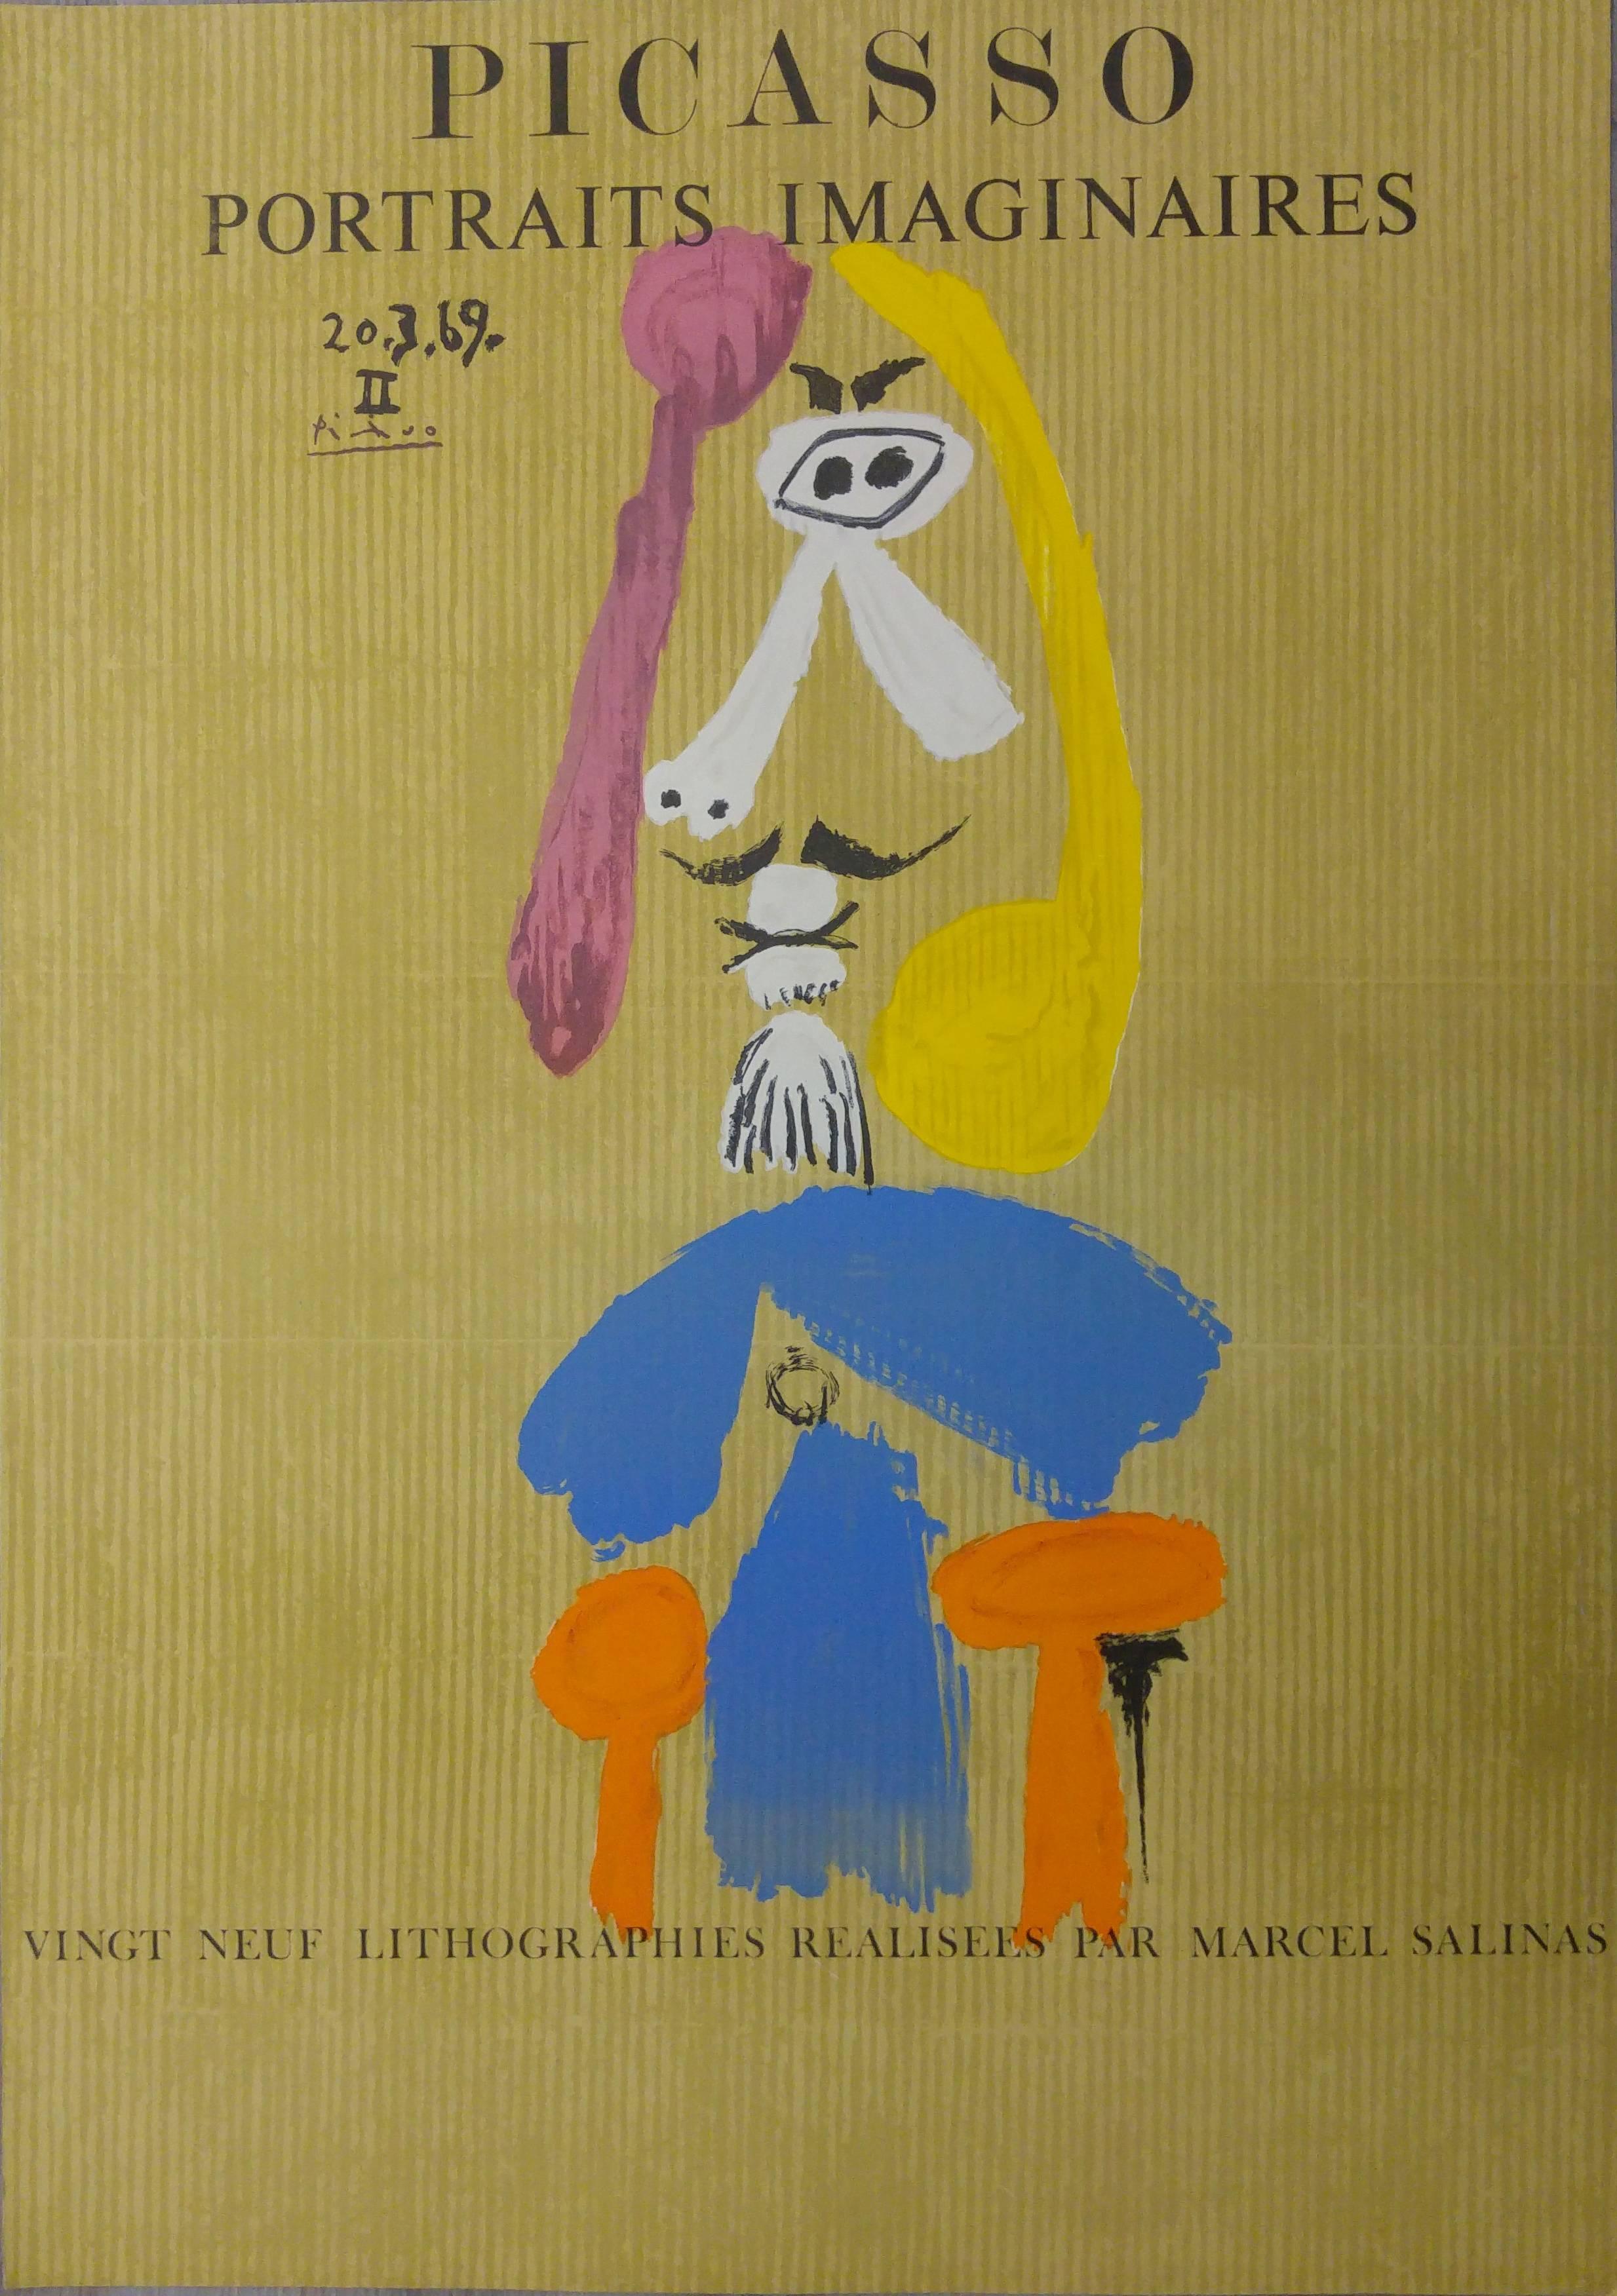 Portrait Print (after) Pablo Picasso - Portraits imaginaires : Homme avec chèvre - Lithographie - 1971